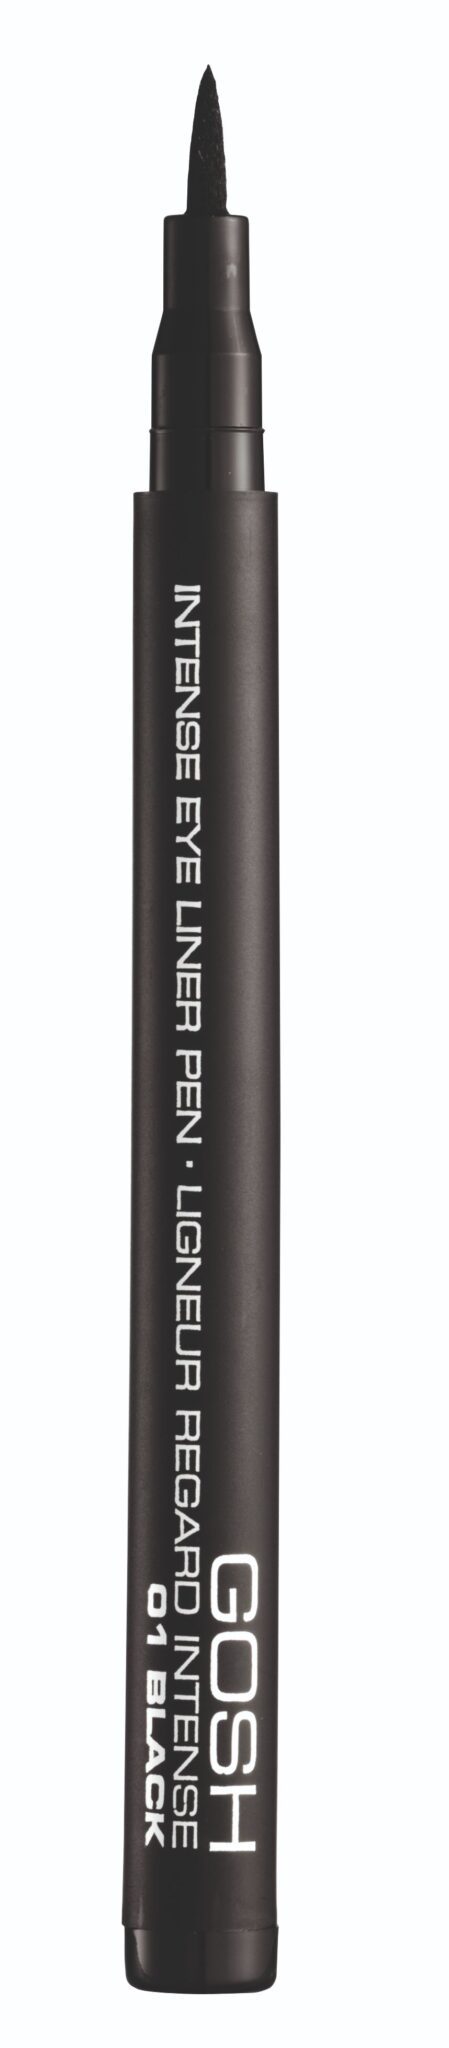 GO Int. Eyeliner Pen 01 Black